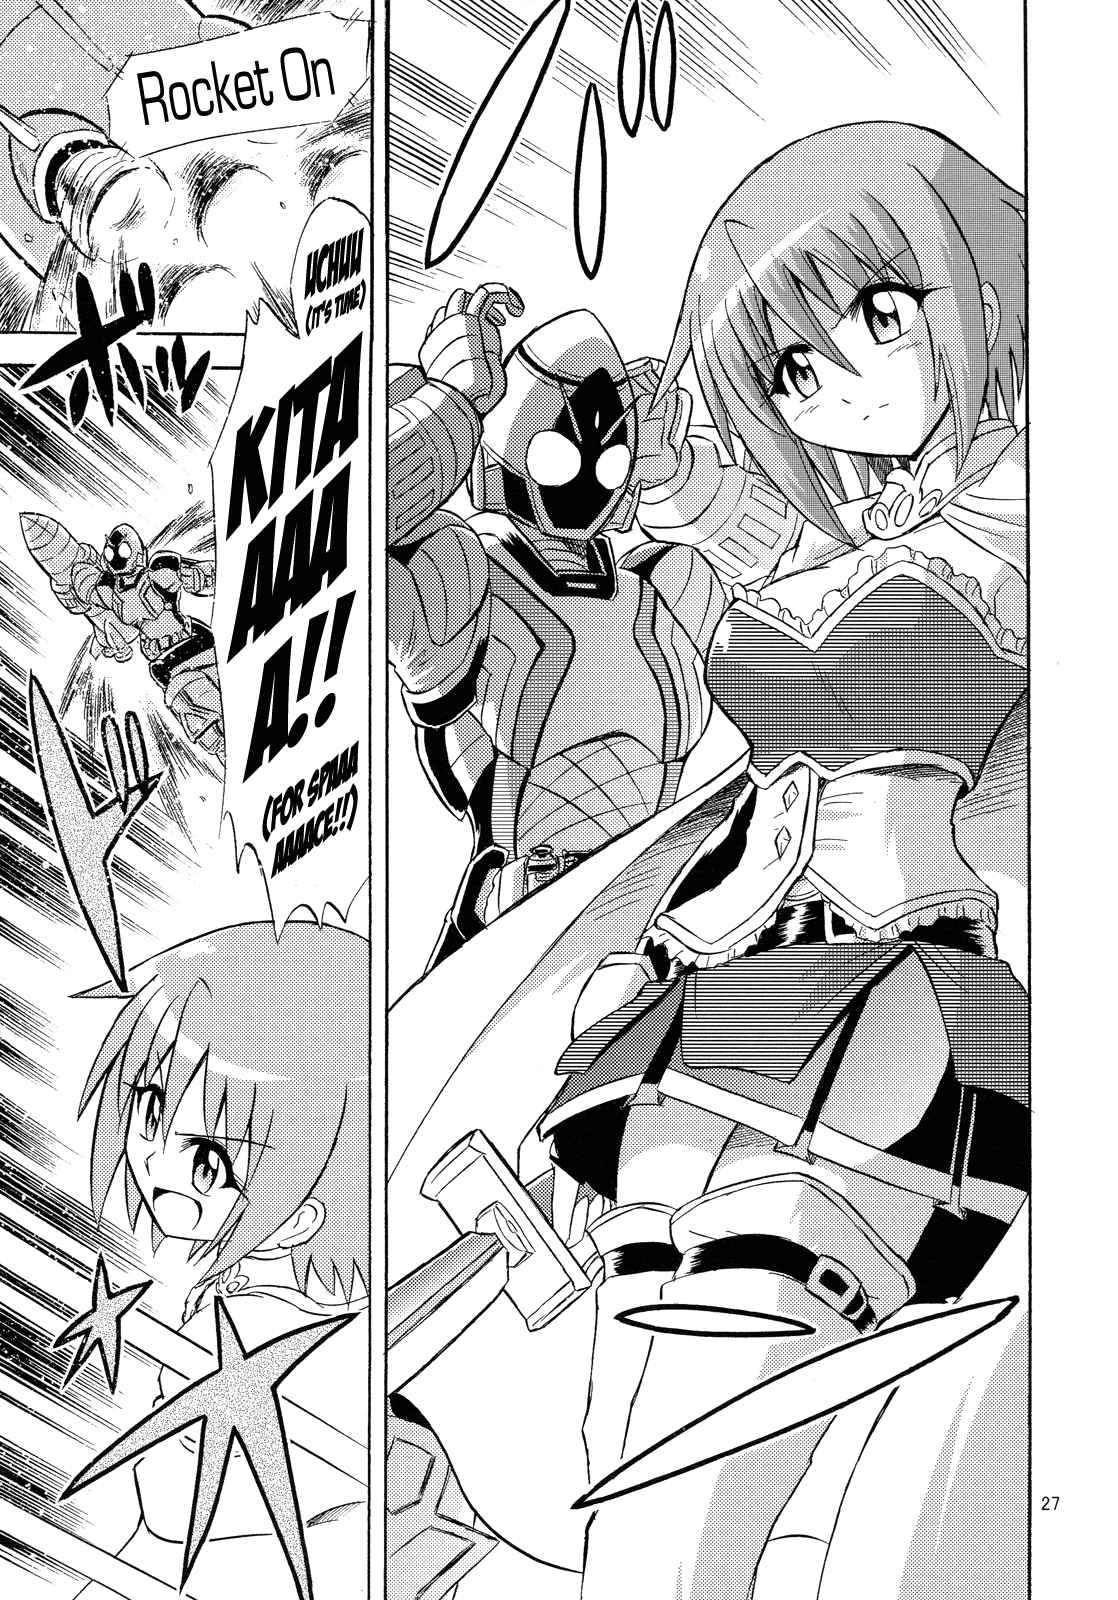 Mahou Shoujo x Kamen Rider Sayaka & Fourze: The Great War of Mitakihara MAGIMIX (Doujinshi) Oneshot